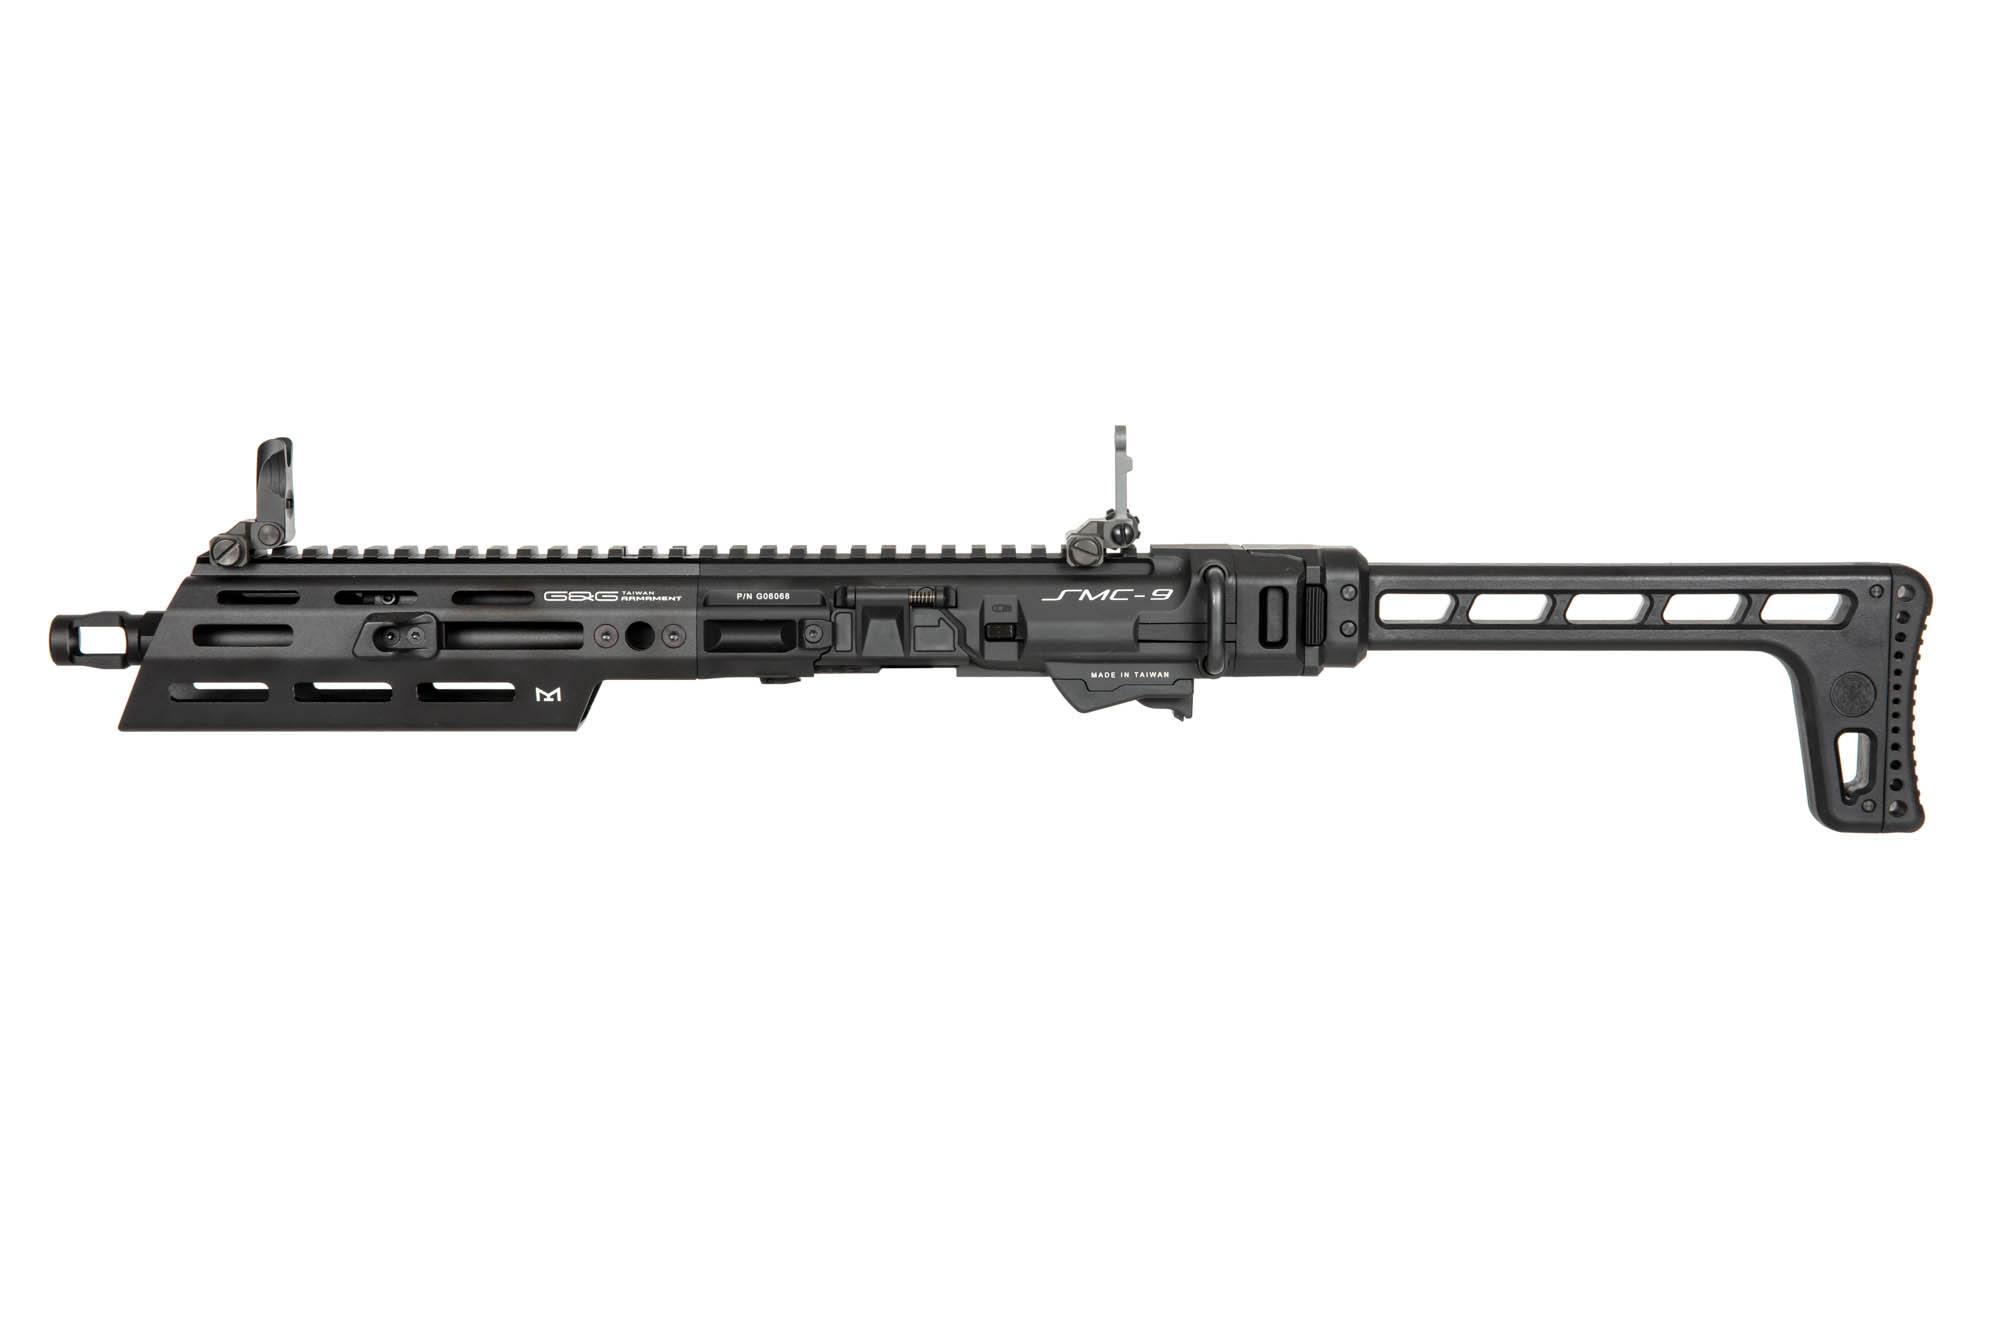 SMC-9 Carbine Kit for GTP9